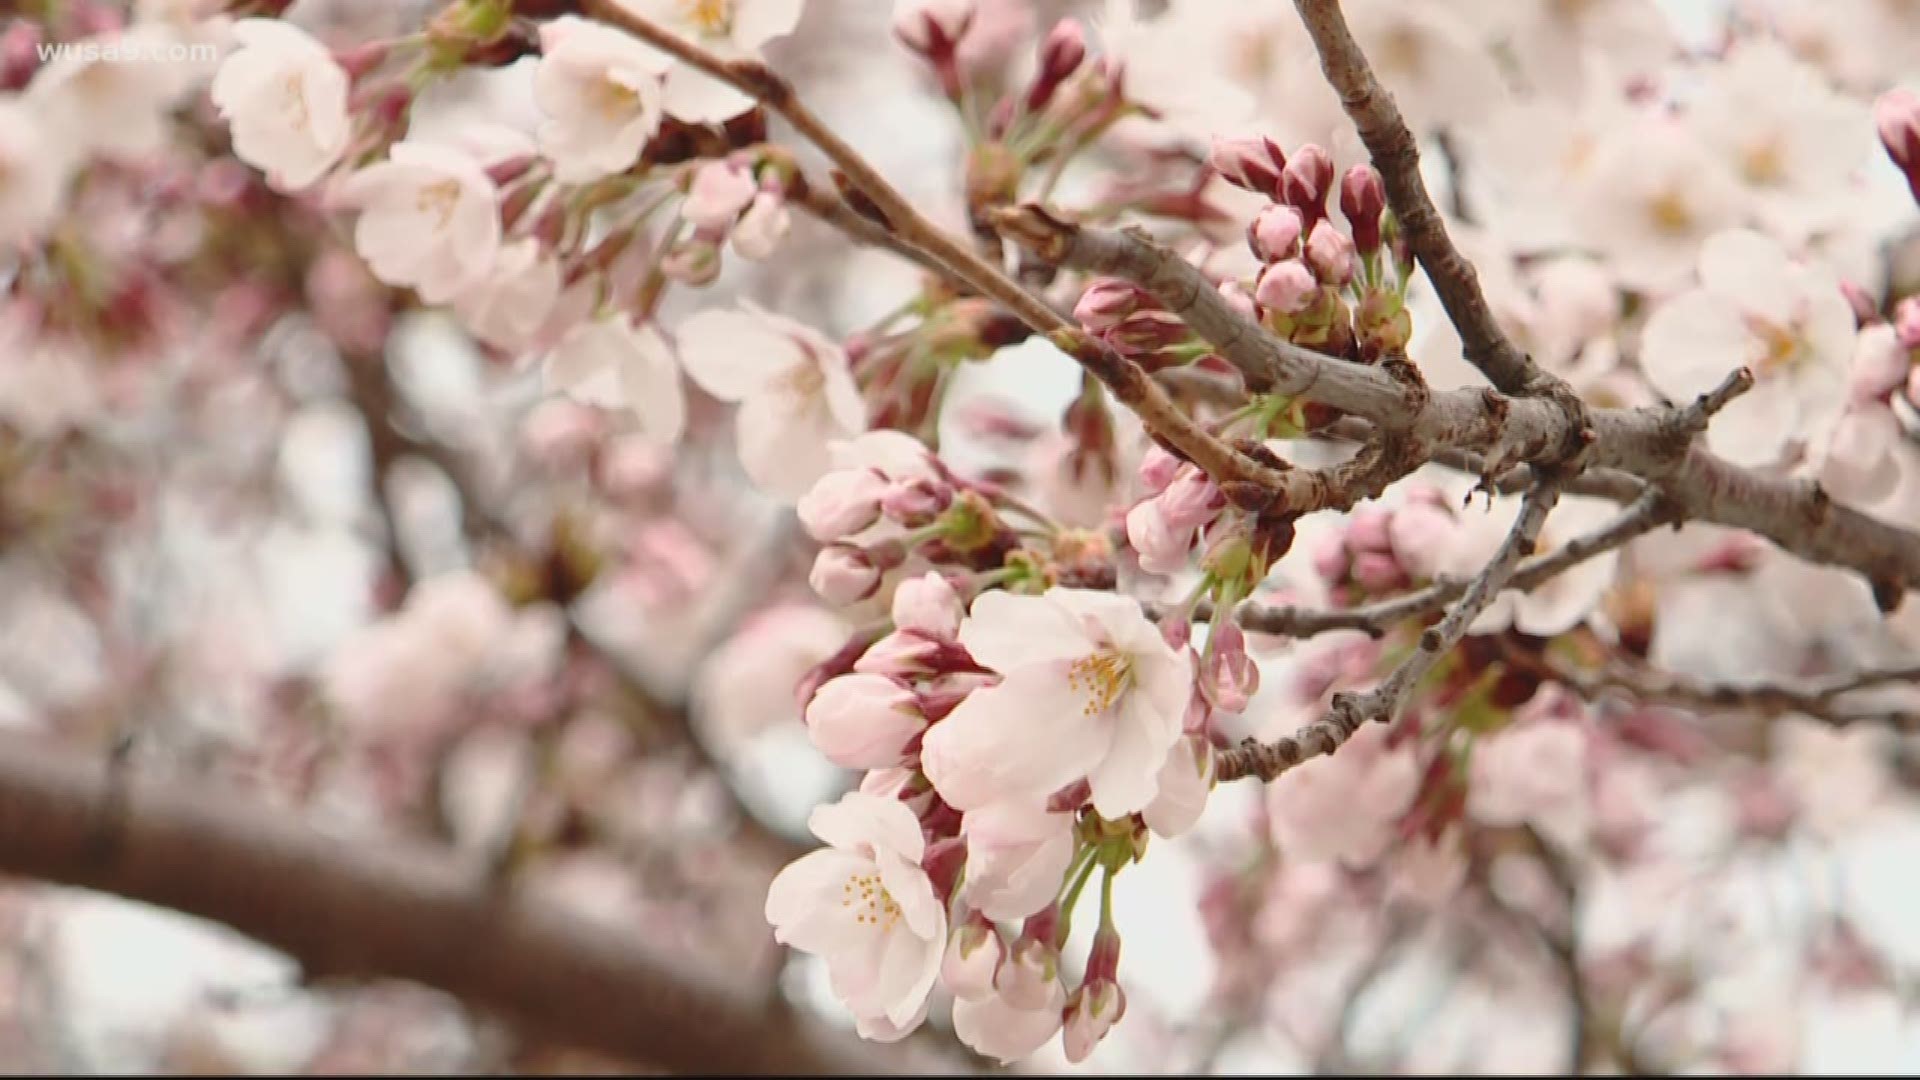 National Cherry Blossom Festival unveils 2021 plan 11alive.com.